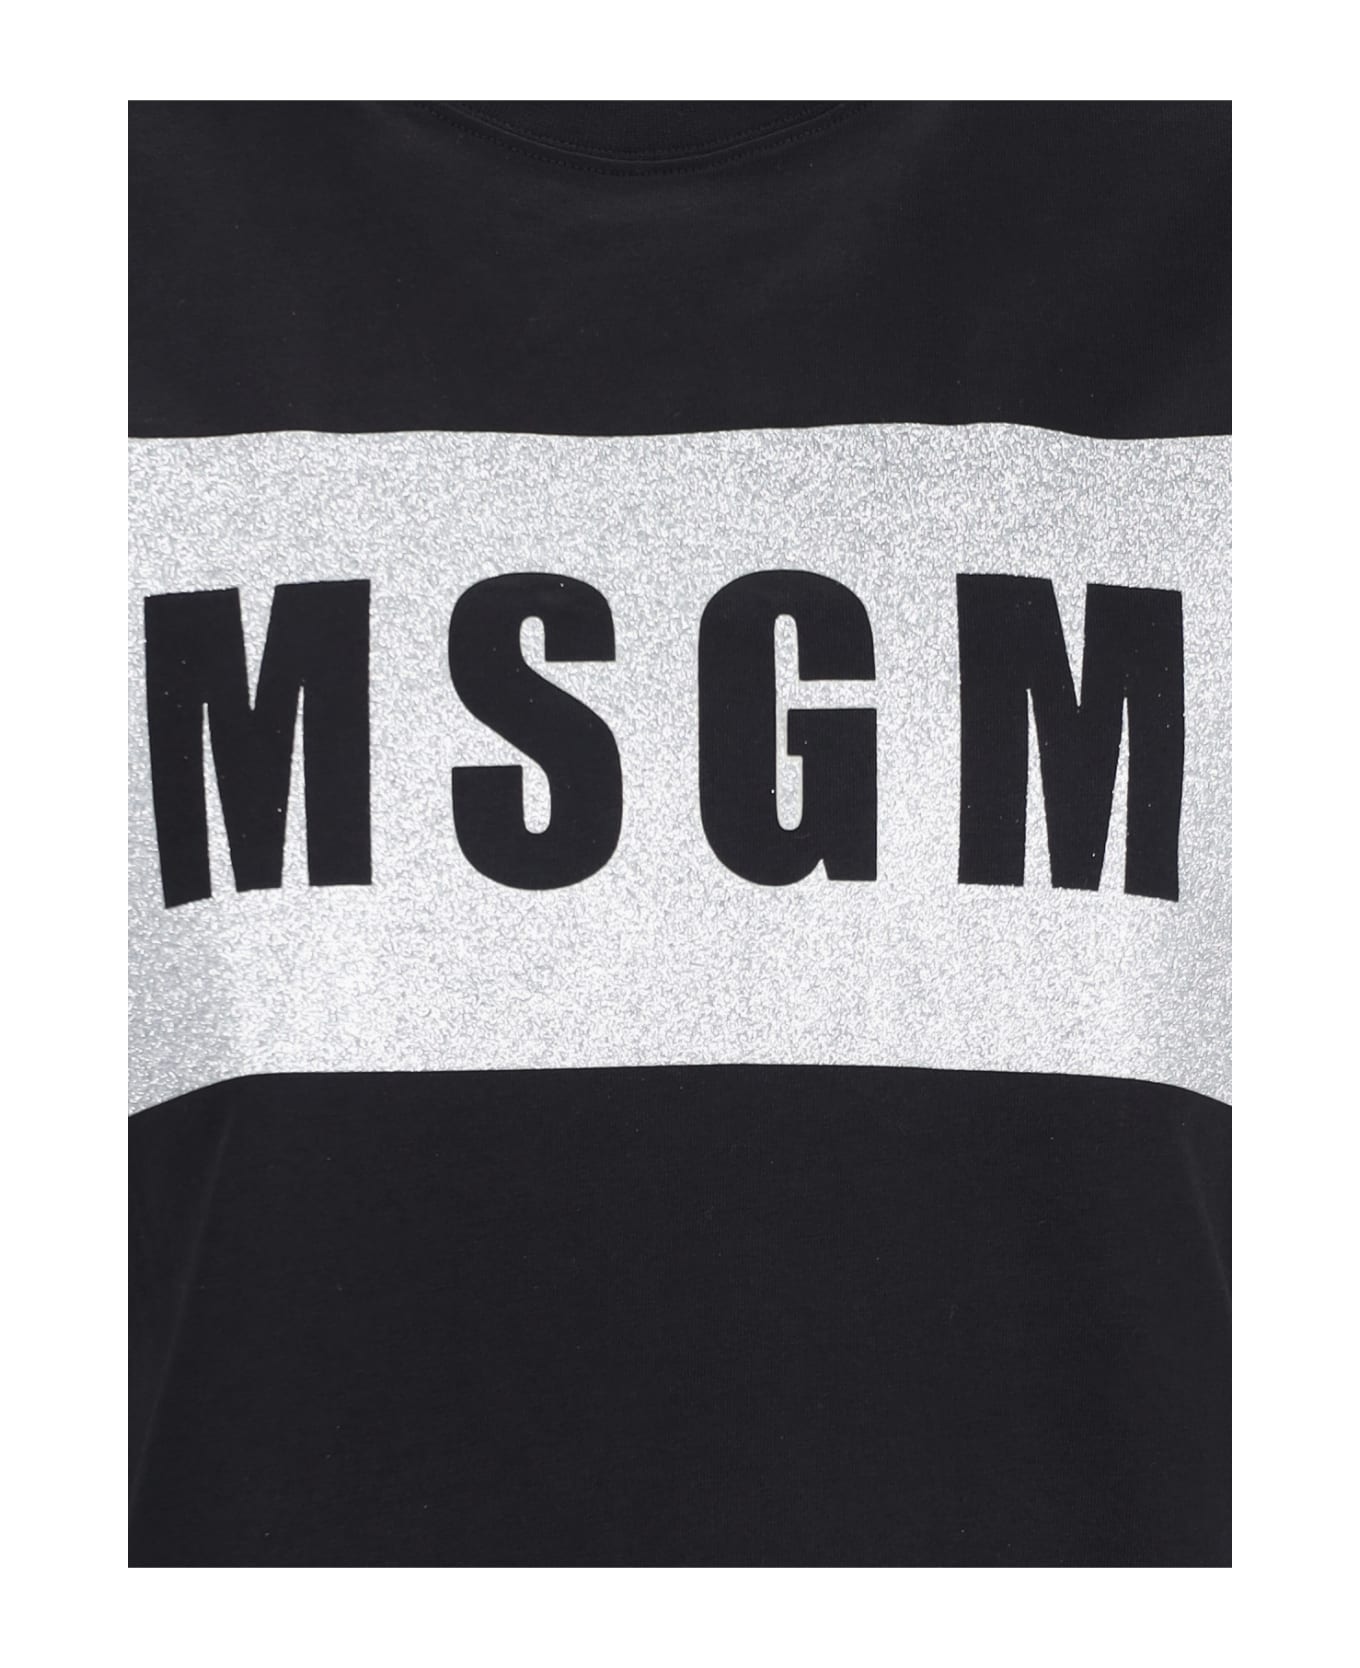 MSGM Logo T-shirt - Black  